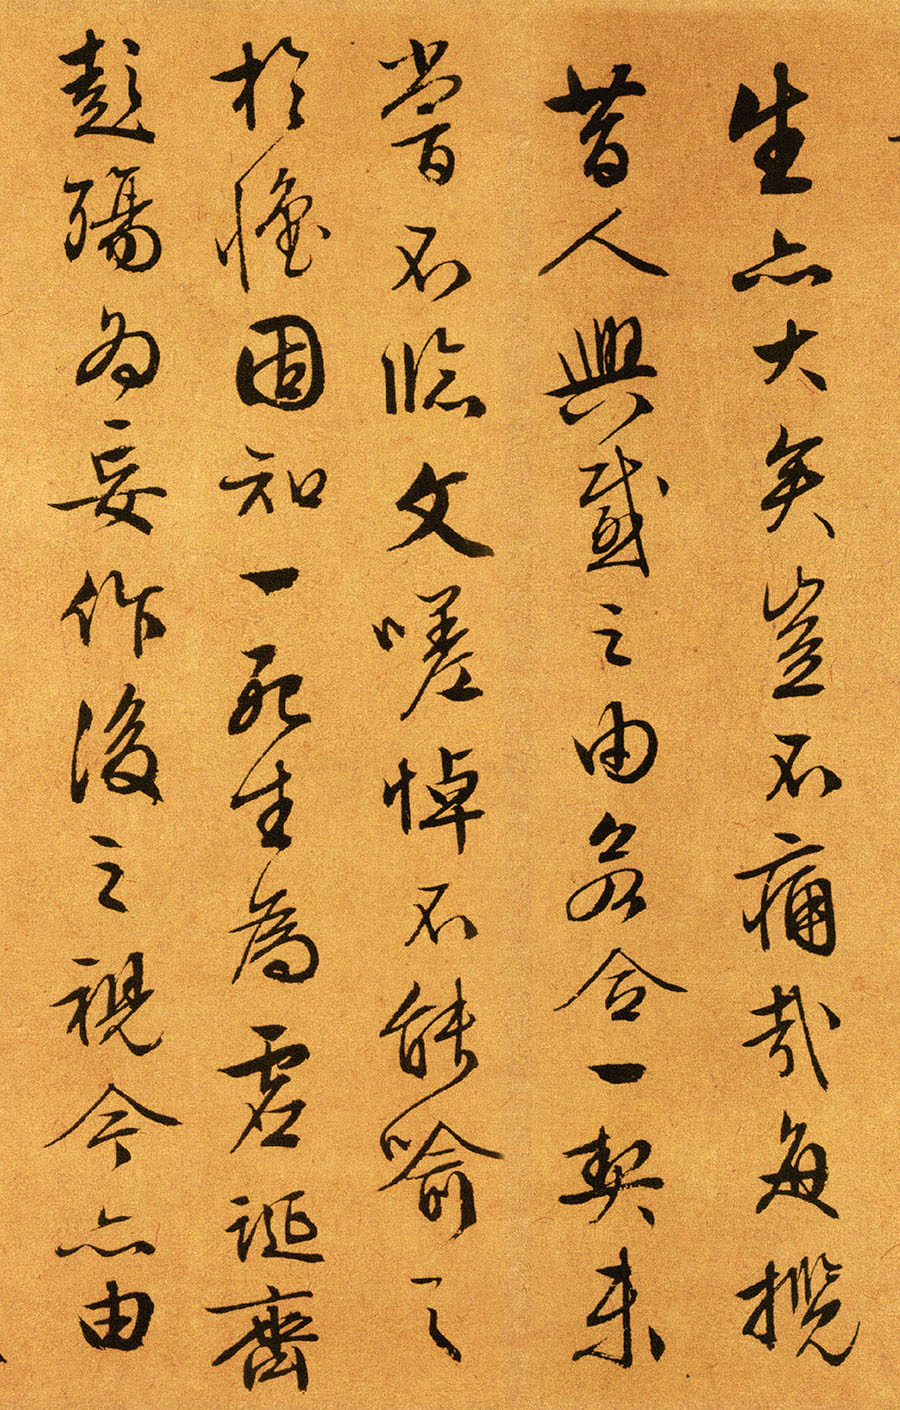 文徵明《行草书兰亭序》-台北故宫博物院藏(图6)